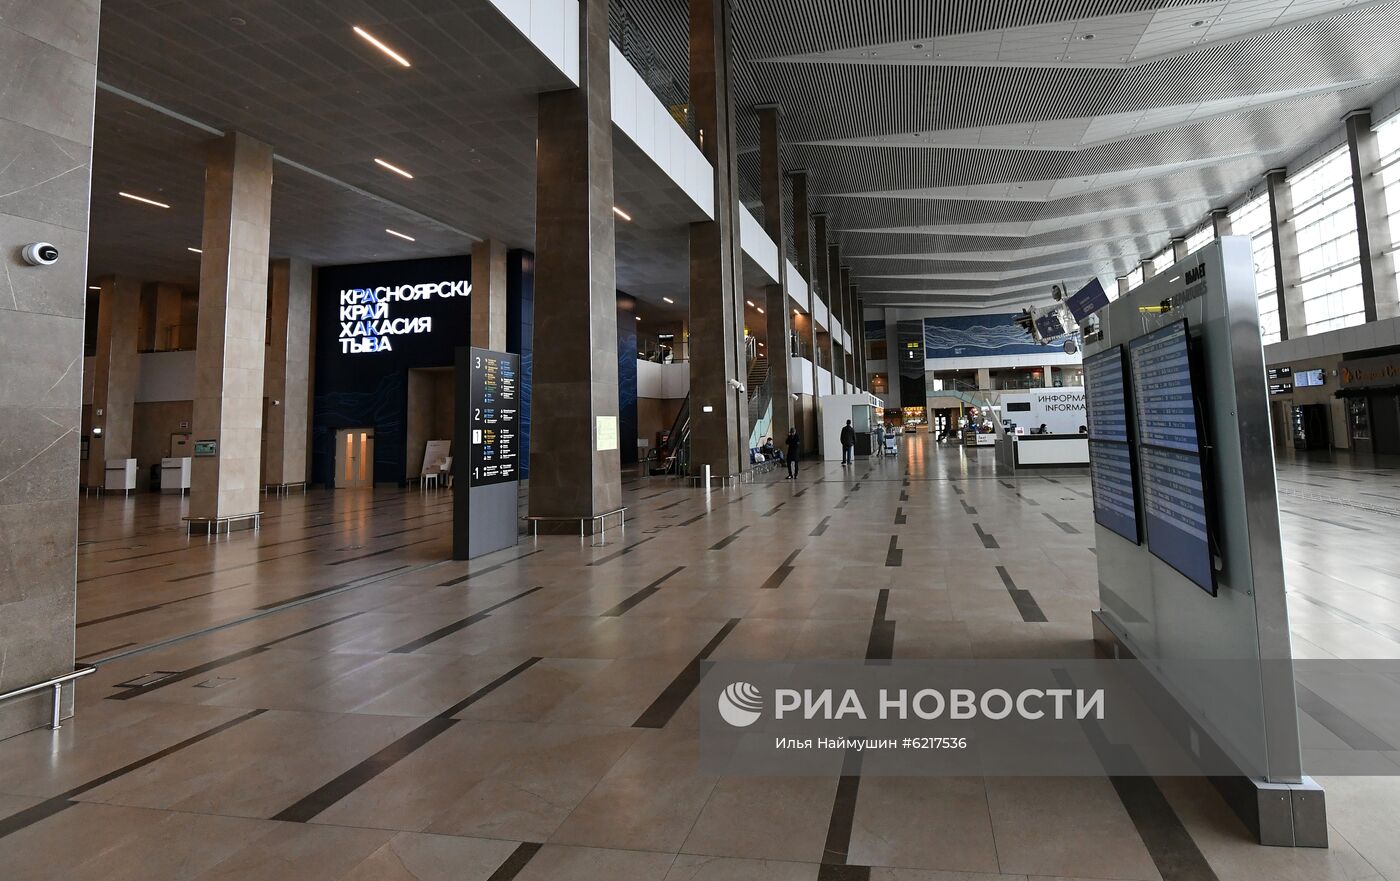 Аэропорт имени Хворостовского в Красноярске во время пандемии коронавируса